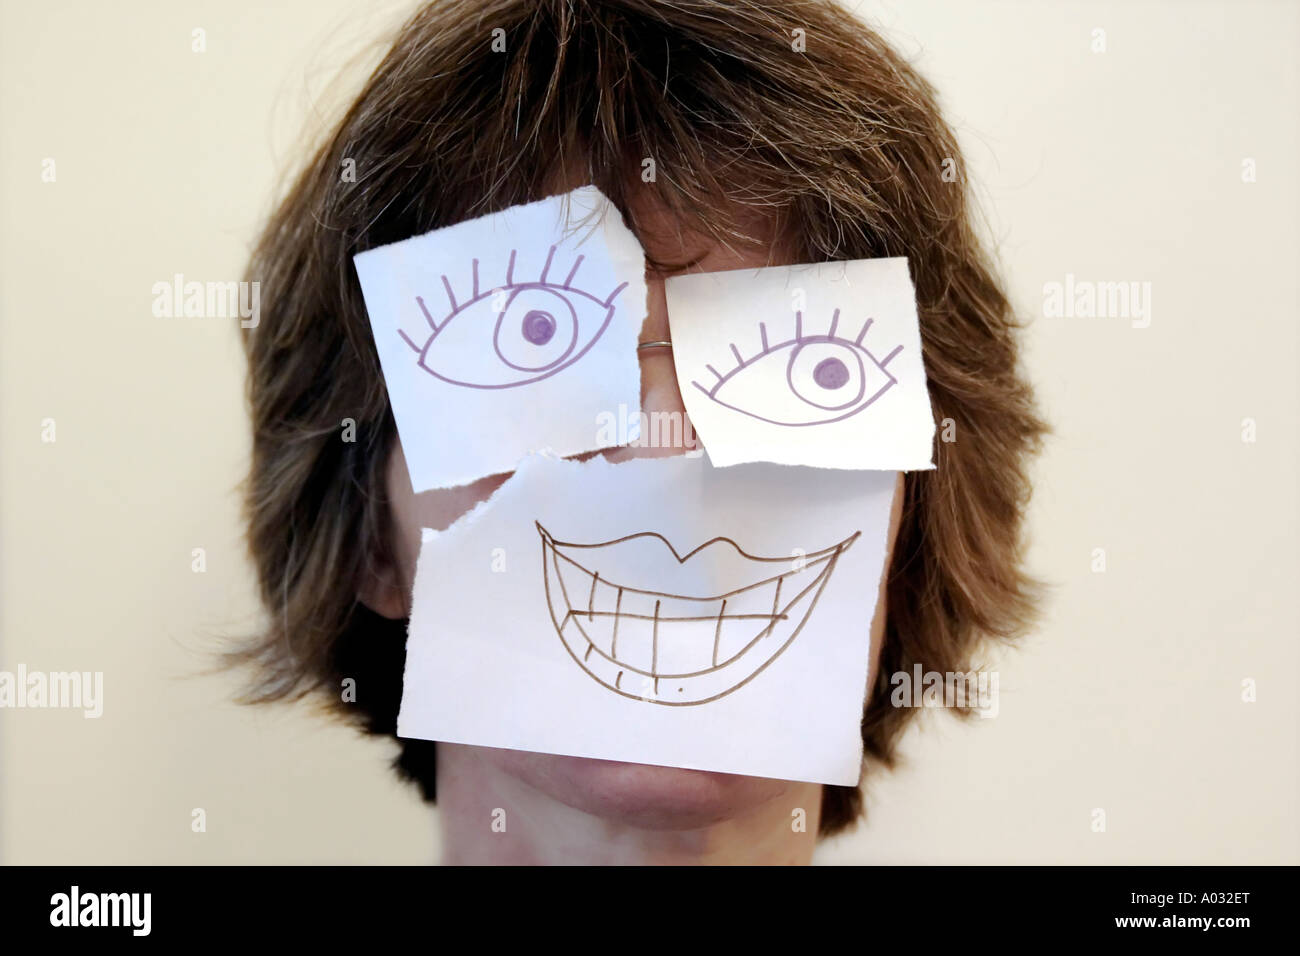 Frau mit Augen und Mund auf Papierherstellung rudimentäre Maske gezeichnet Stockfoto